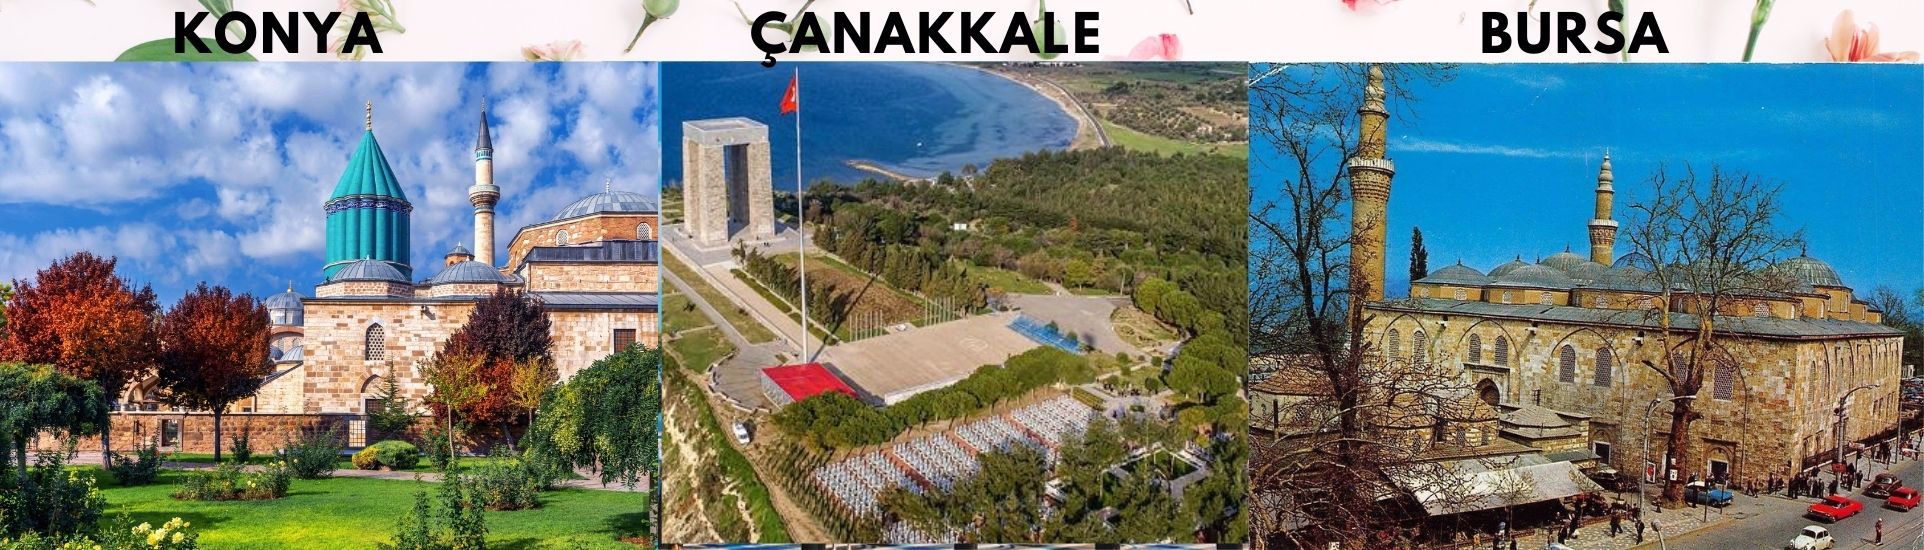 Emrecik turizm ile   lüks yurtiçi turları  Konya, Çanakkale, Bursa tüm Türkiye  her bütçeye uygun çözümler üreten , tercih edilen güvenilir acente ile yeni keşifler  edineceksiniz..